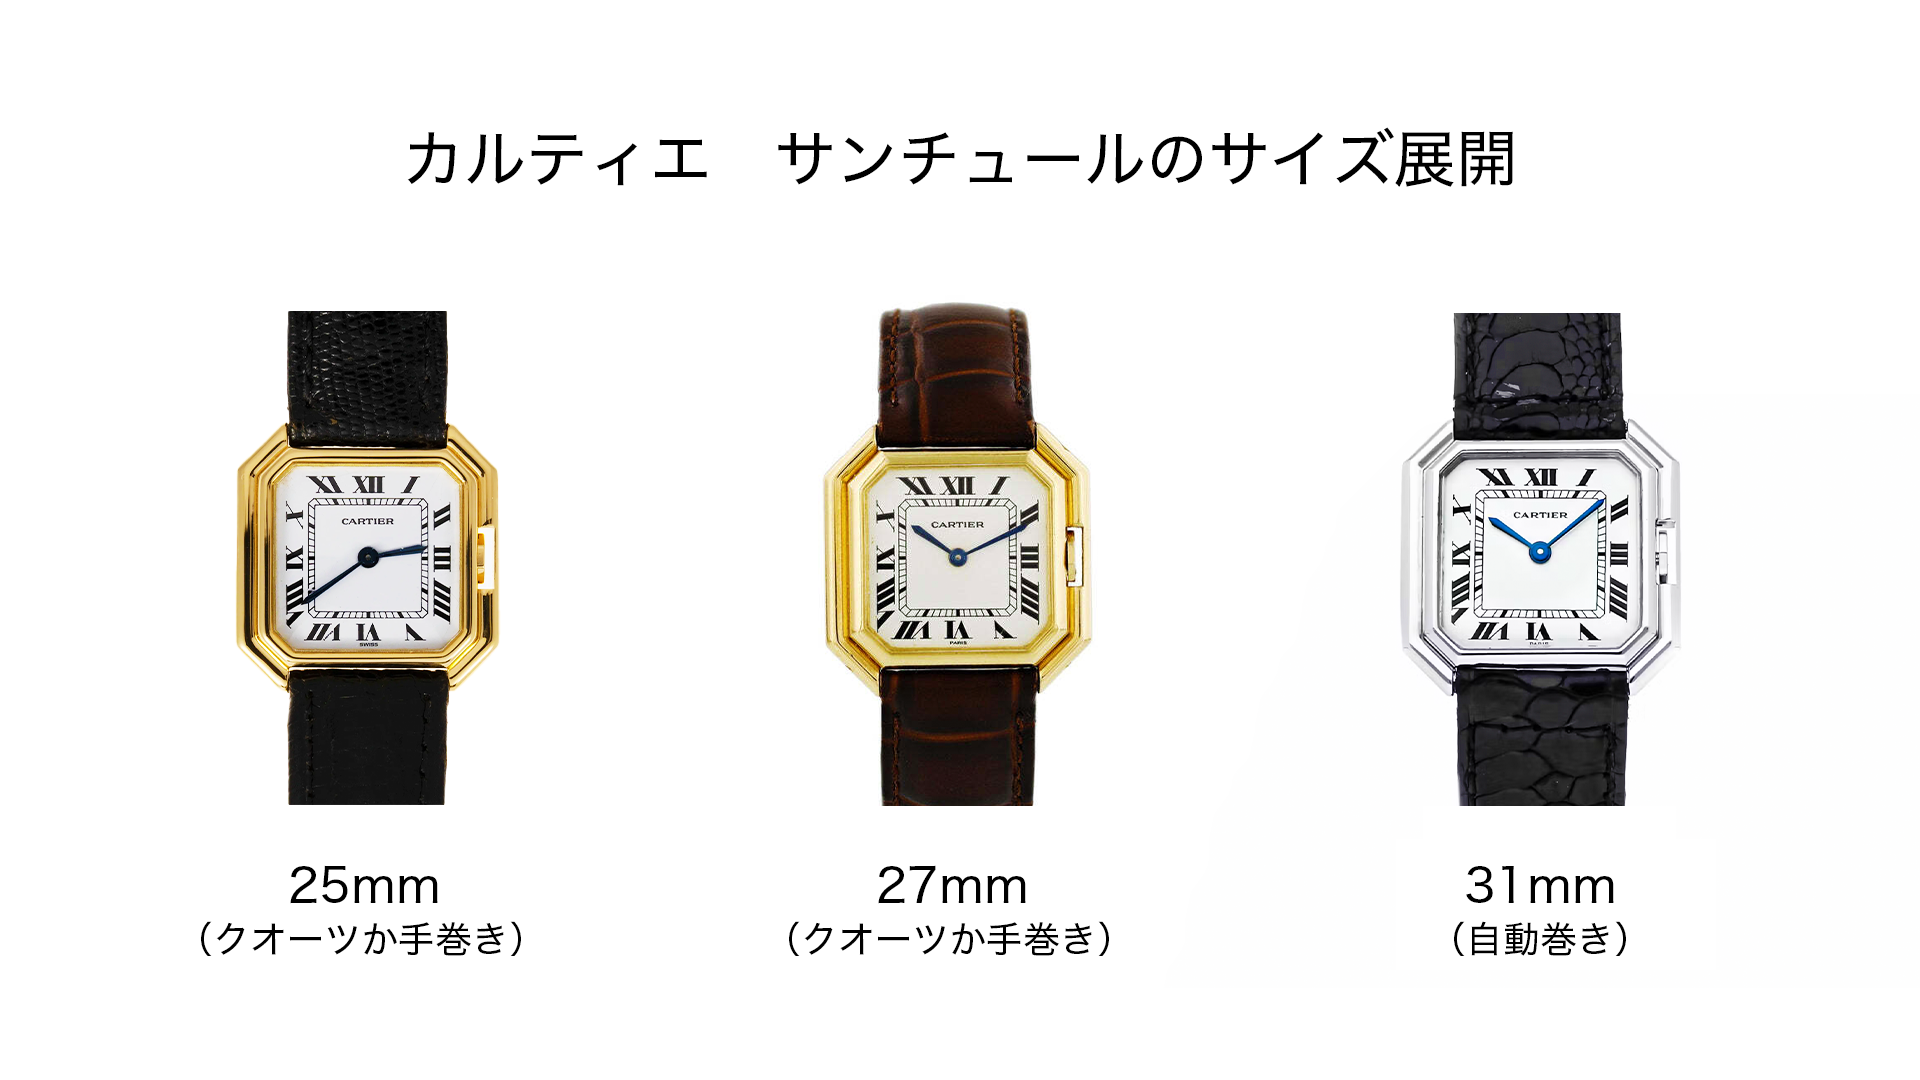 Cartier Watches Santur Sizes